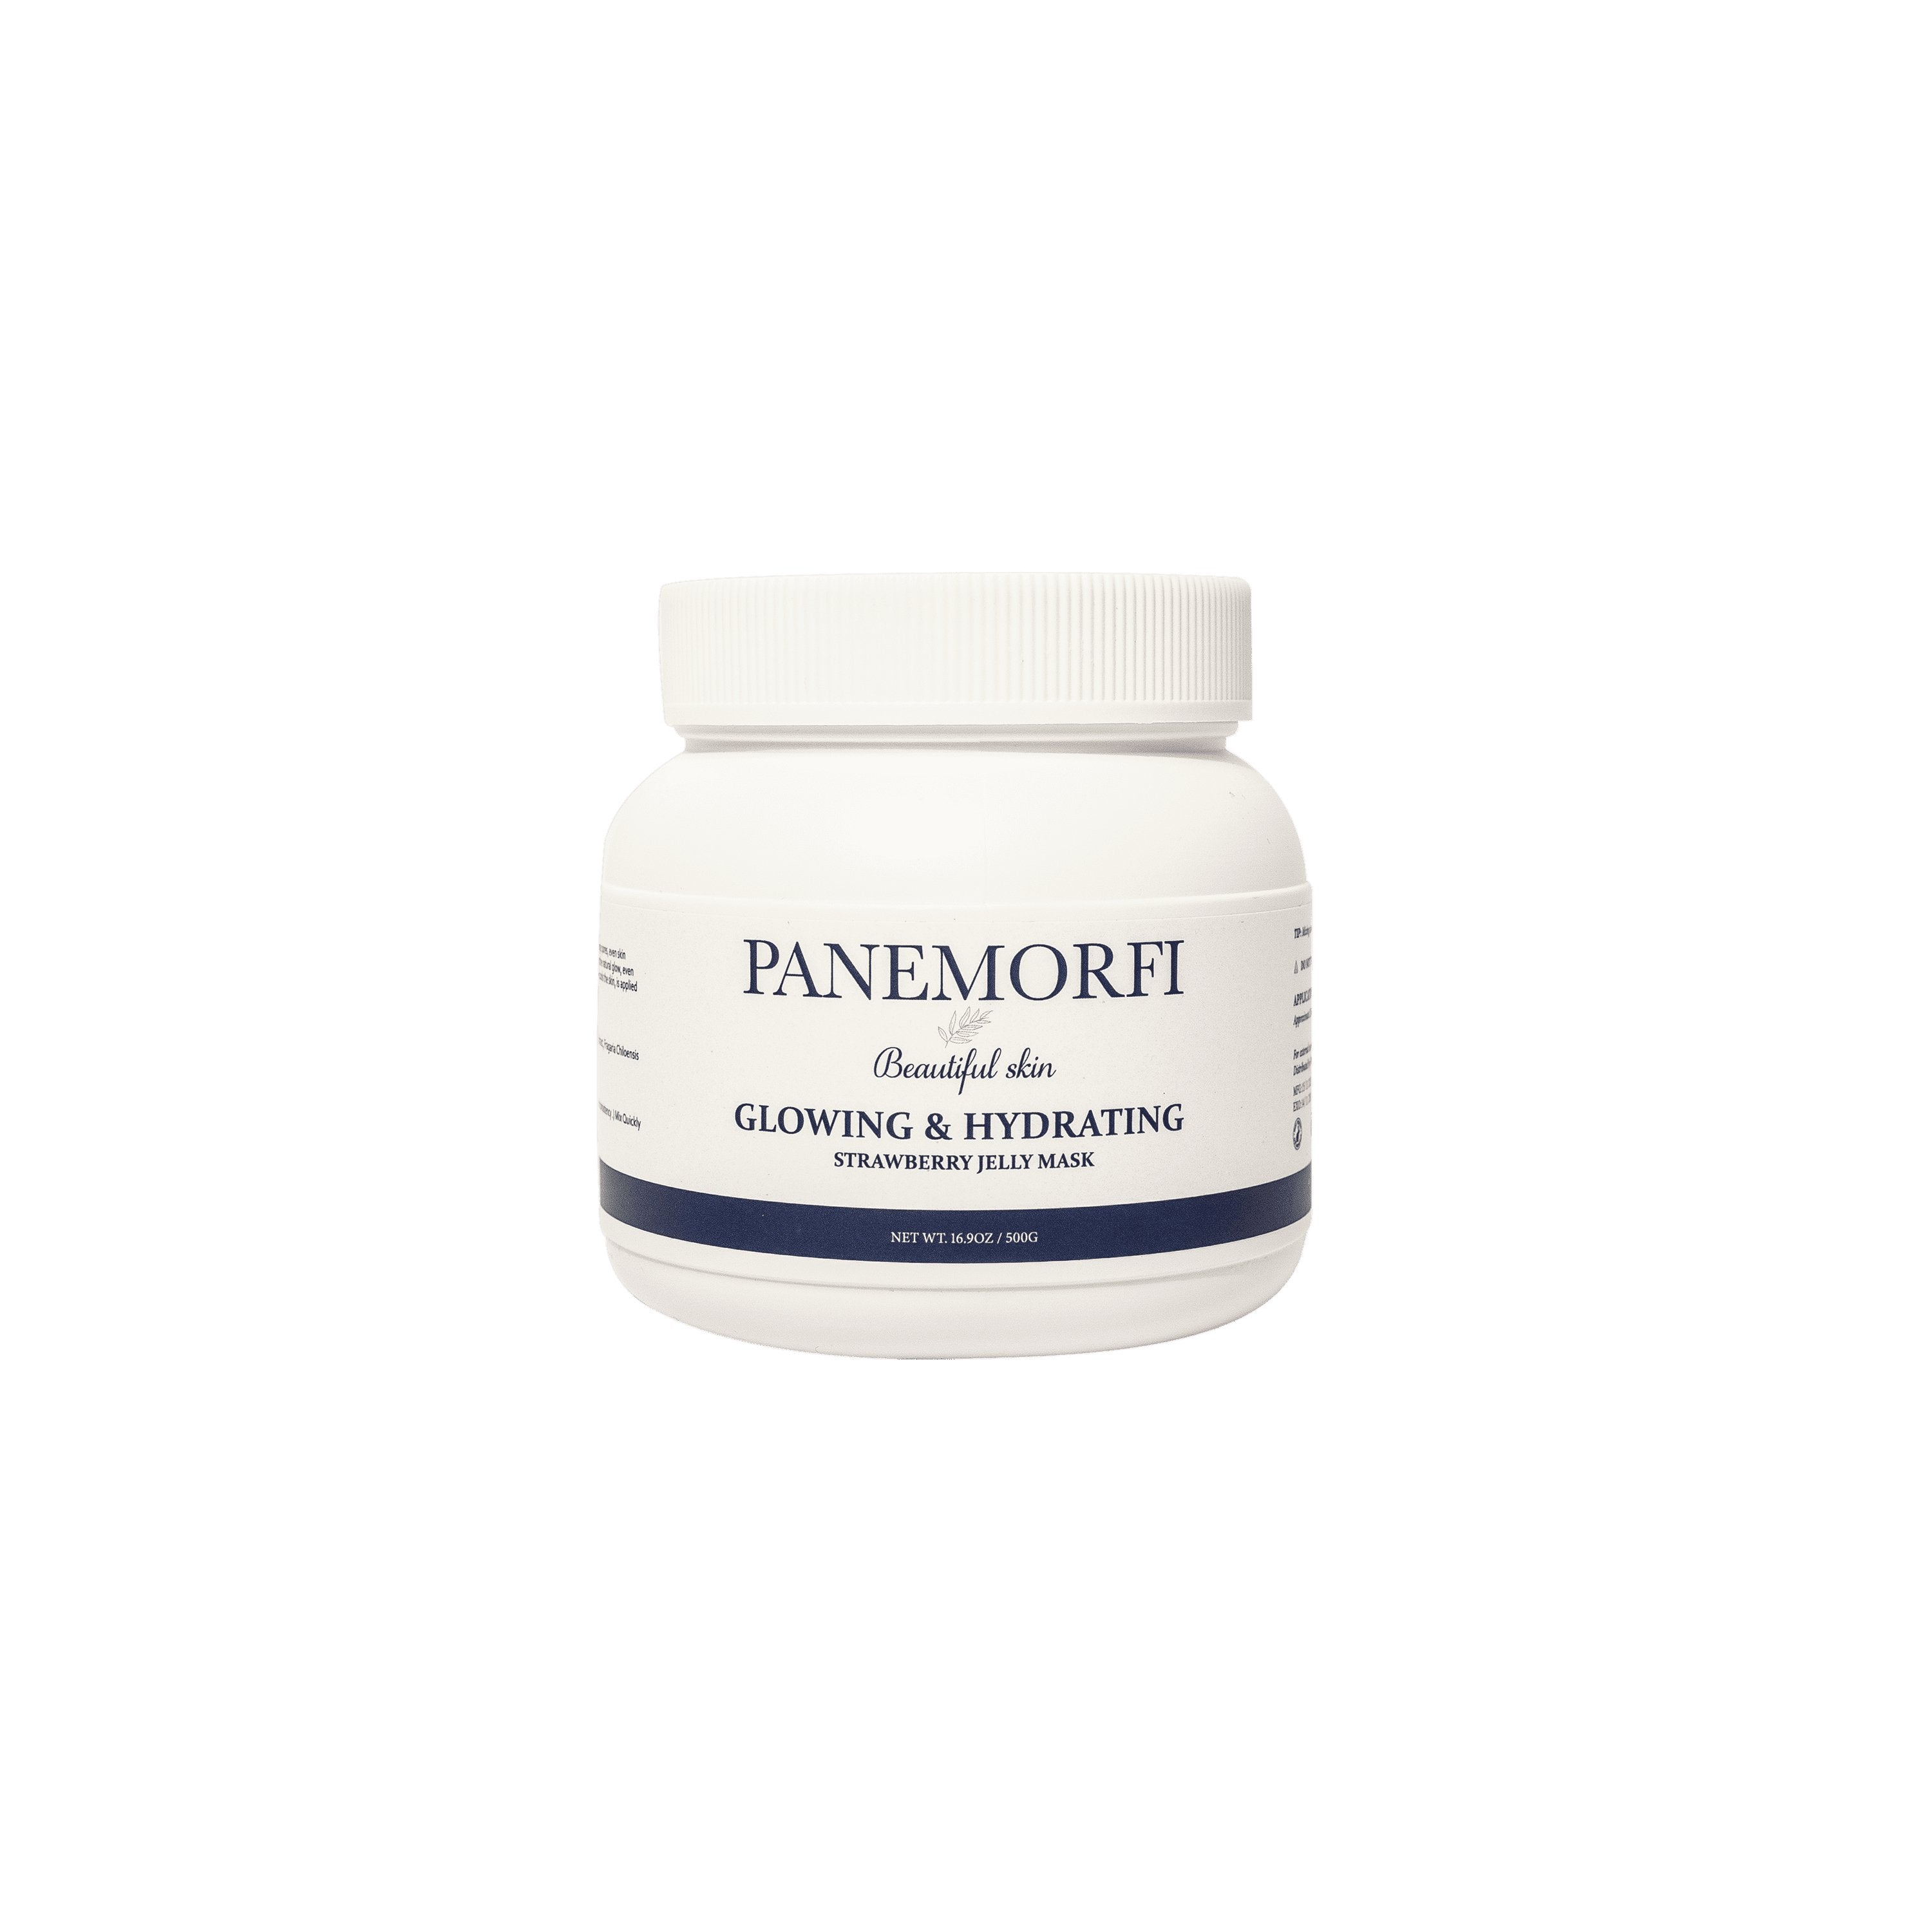 PANEMORFI - GLOWING & HYDRATING STRAWBERRY JELLY MASK - Luna Beauty Supplies